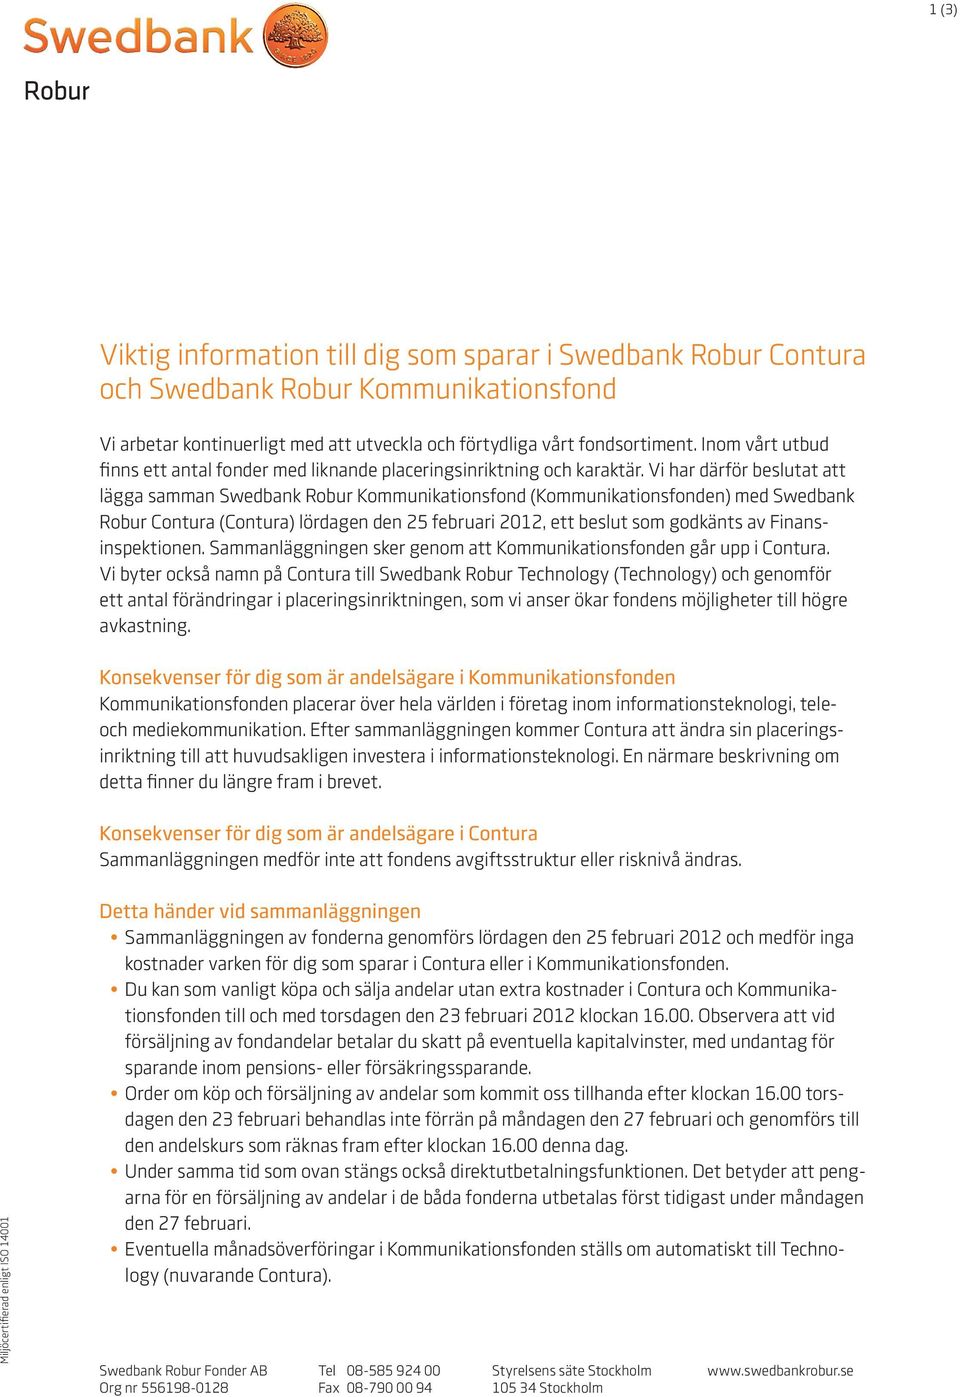 Vi har därför beslutat att lägga samman Swedbank Robur Kommunikationsfond (Kommunikationsfonden) med Swedbank Robur Contura (Contura) lördagen den 25 februari 2012, ett beslut som godkänts av